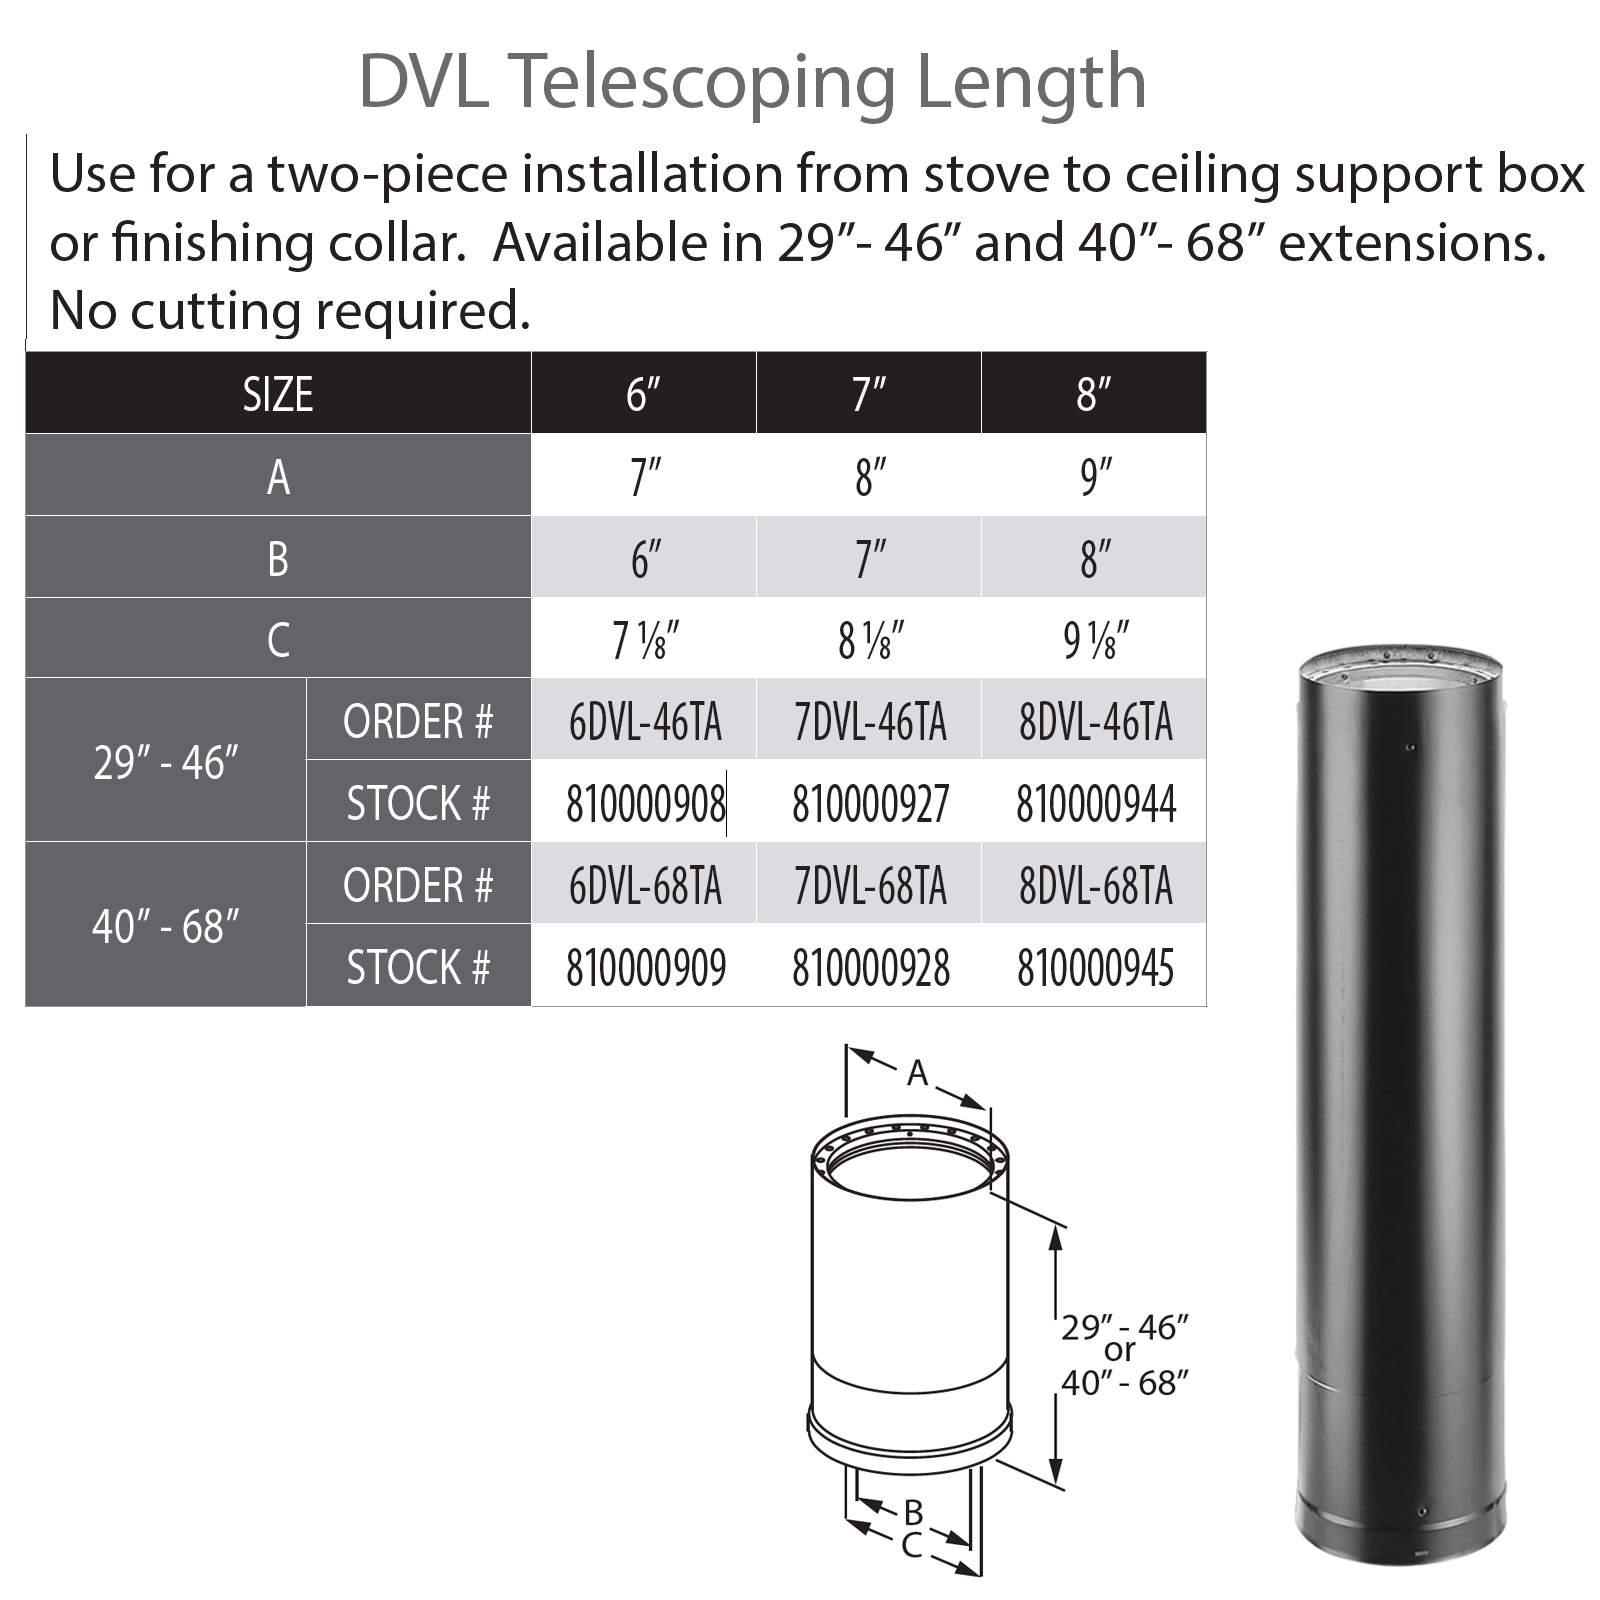 DuraVent DVL 7" Diameter Telescoping Length 40" - 68" | 7DVL-68TA